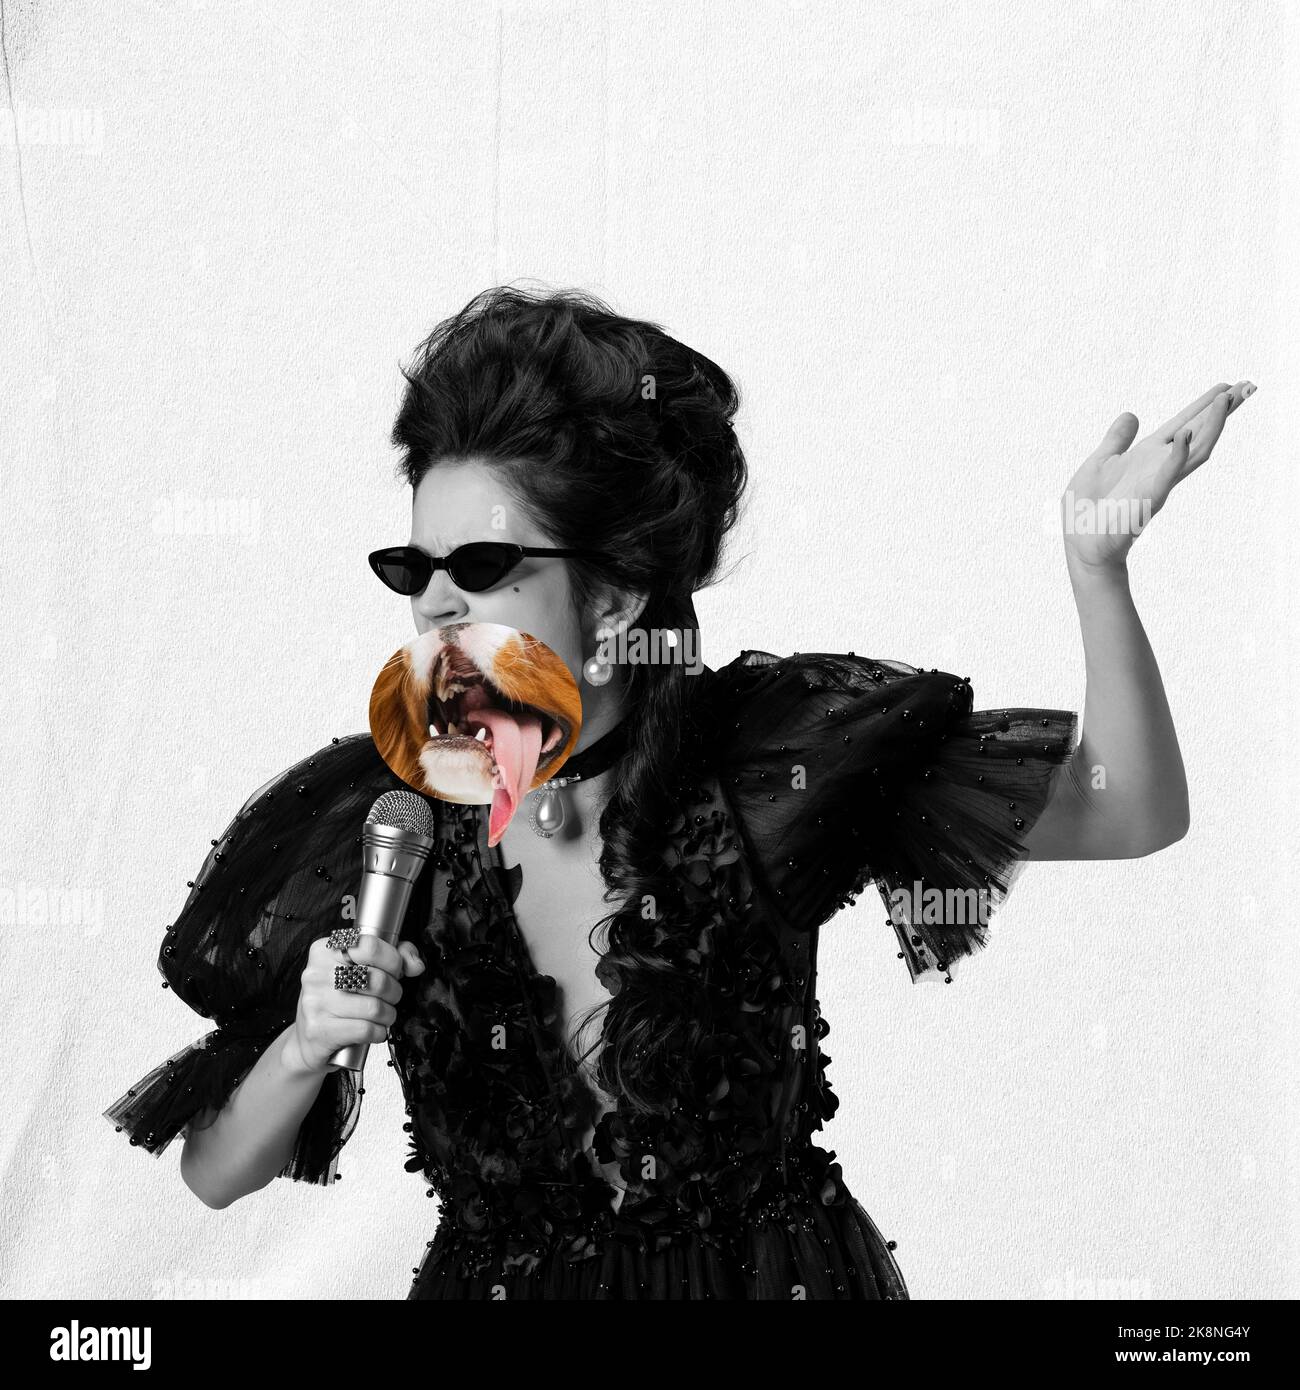 Sänger. Surreale Collage mit bw-Porträt einer jungen schönen Frau im Abendkleid mit einem Teil des Gesichts des Hundes statt Gesicht. Emotionen, Gesichtsbehandlung Stockfoto